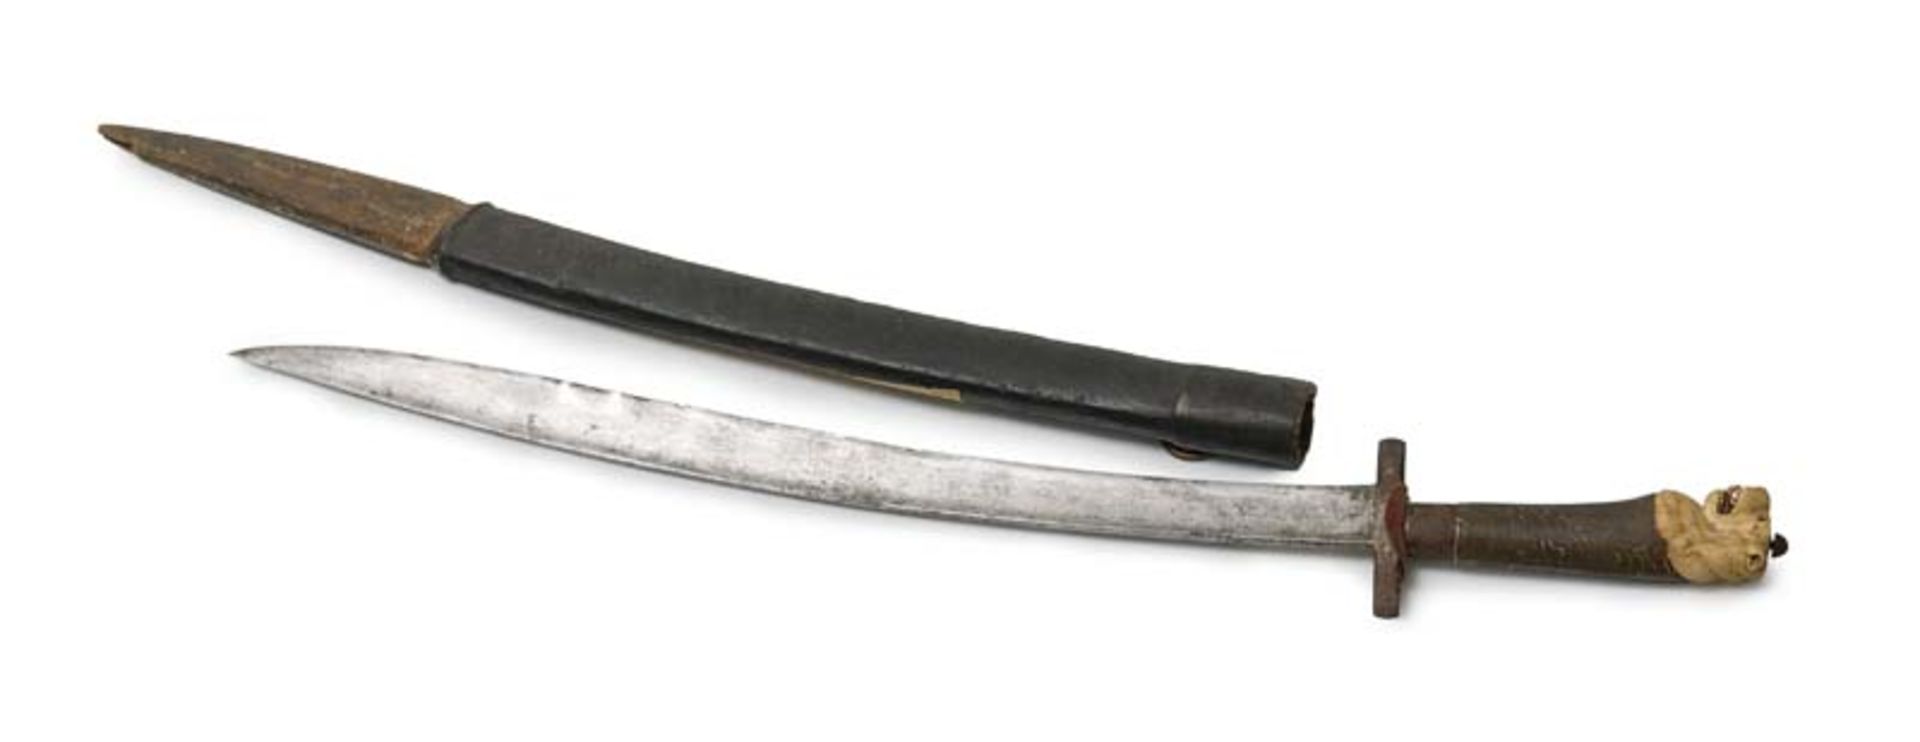 Varia - - Kurzschwert mit Beinapplikation und Scheide. Um 18. Jhd. L 66 cm. Knauf und Heft aus Bein.